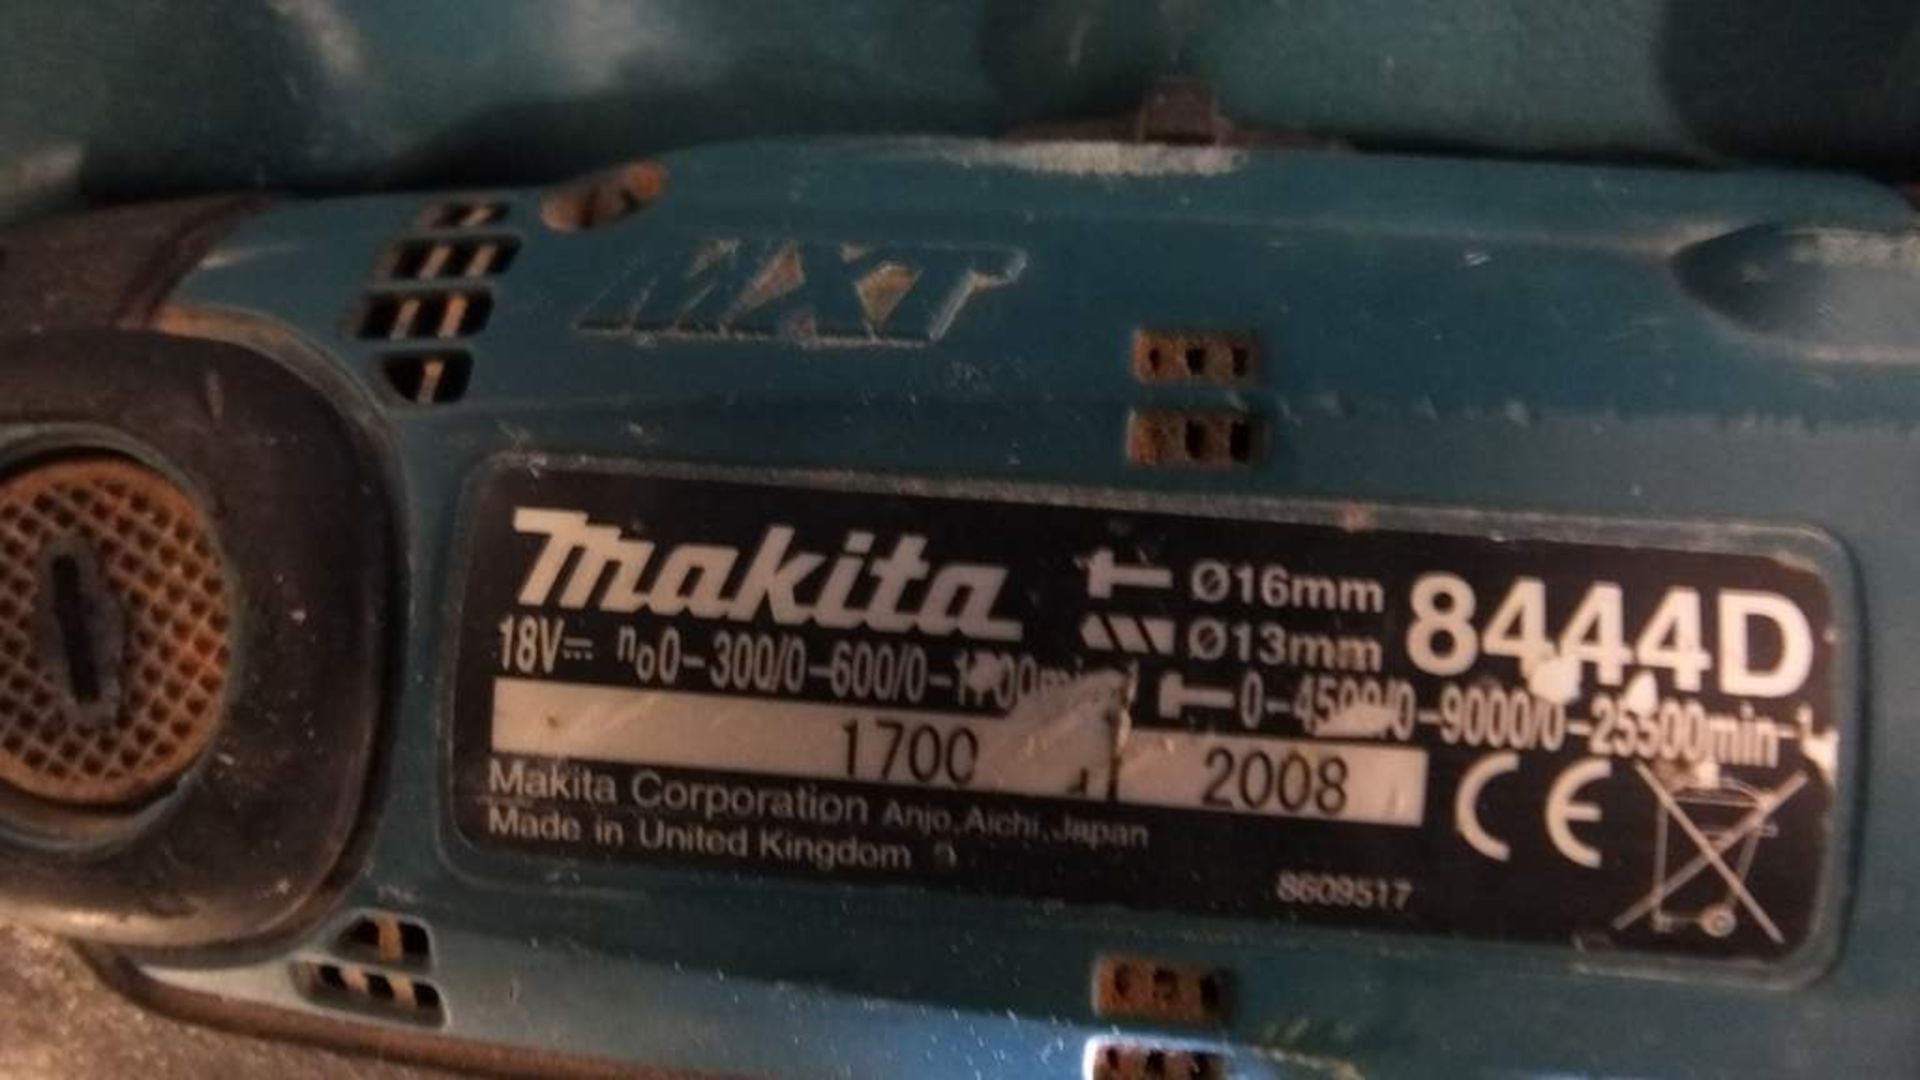 Makita 8444D cordless drill - Image 4 of 4